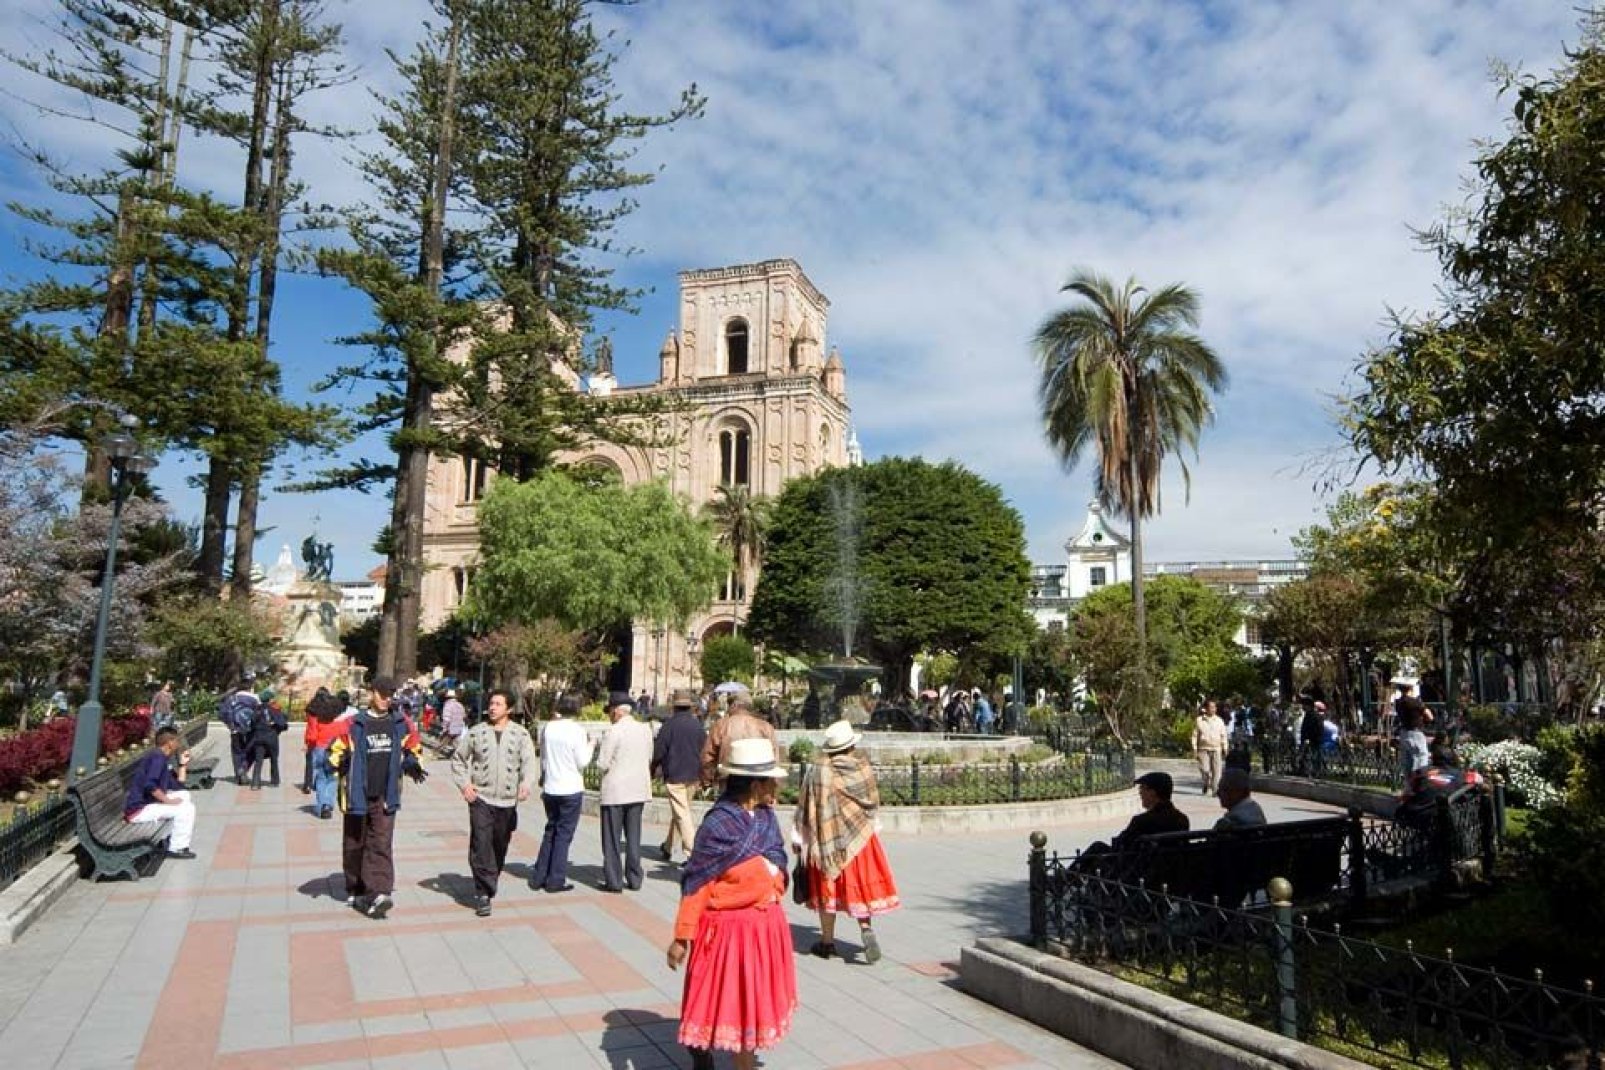 Die Stadt Cuenca wurde von der UNESCO als historisches Zentrum und Weltkulturerbe unter Denkmalschutz gestellt.